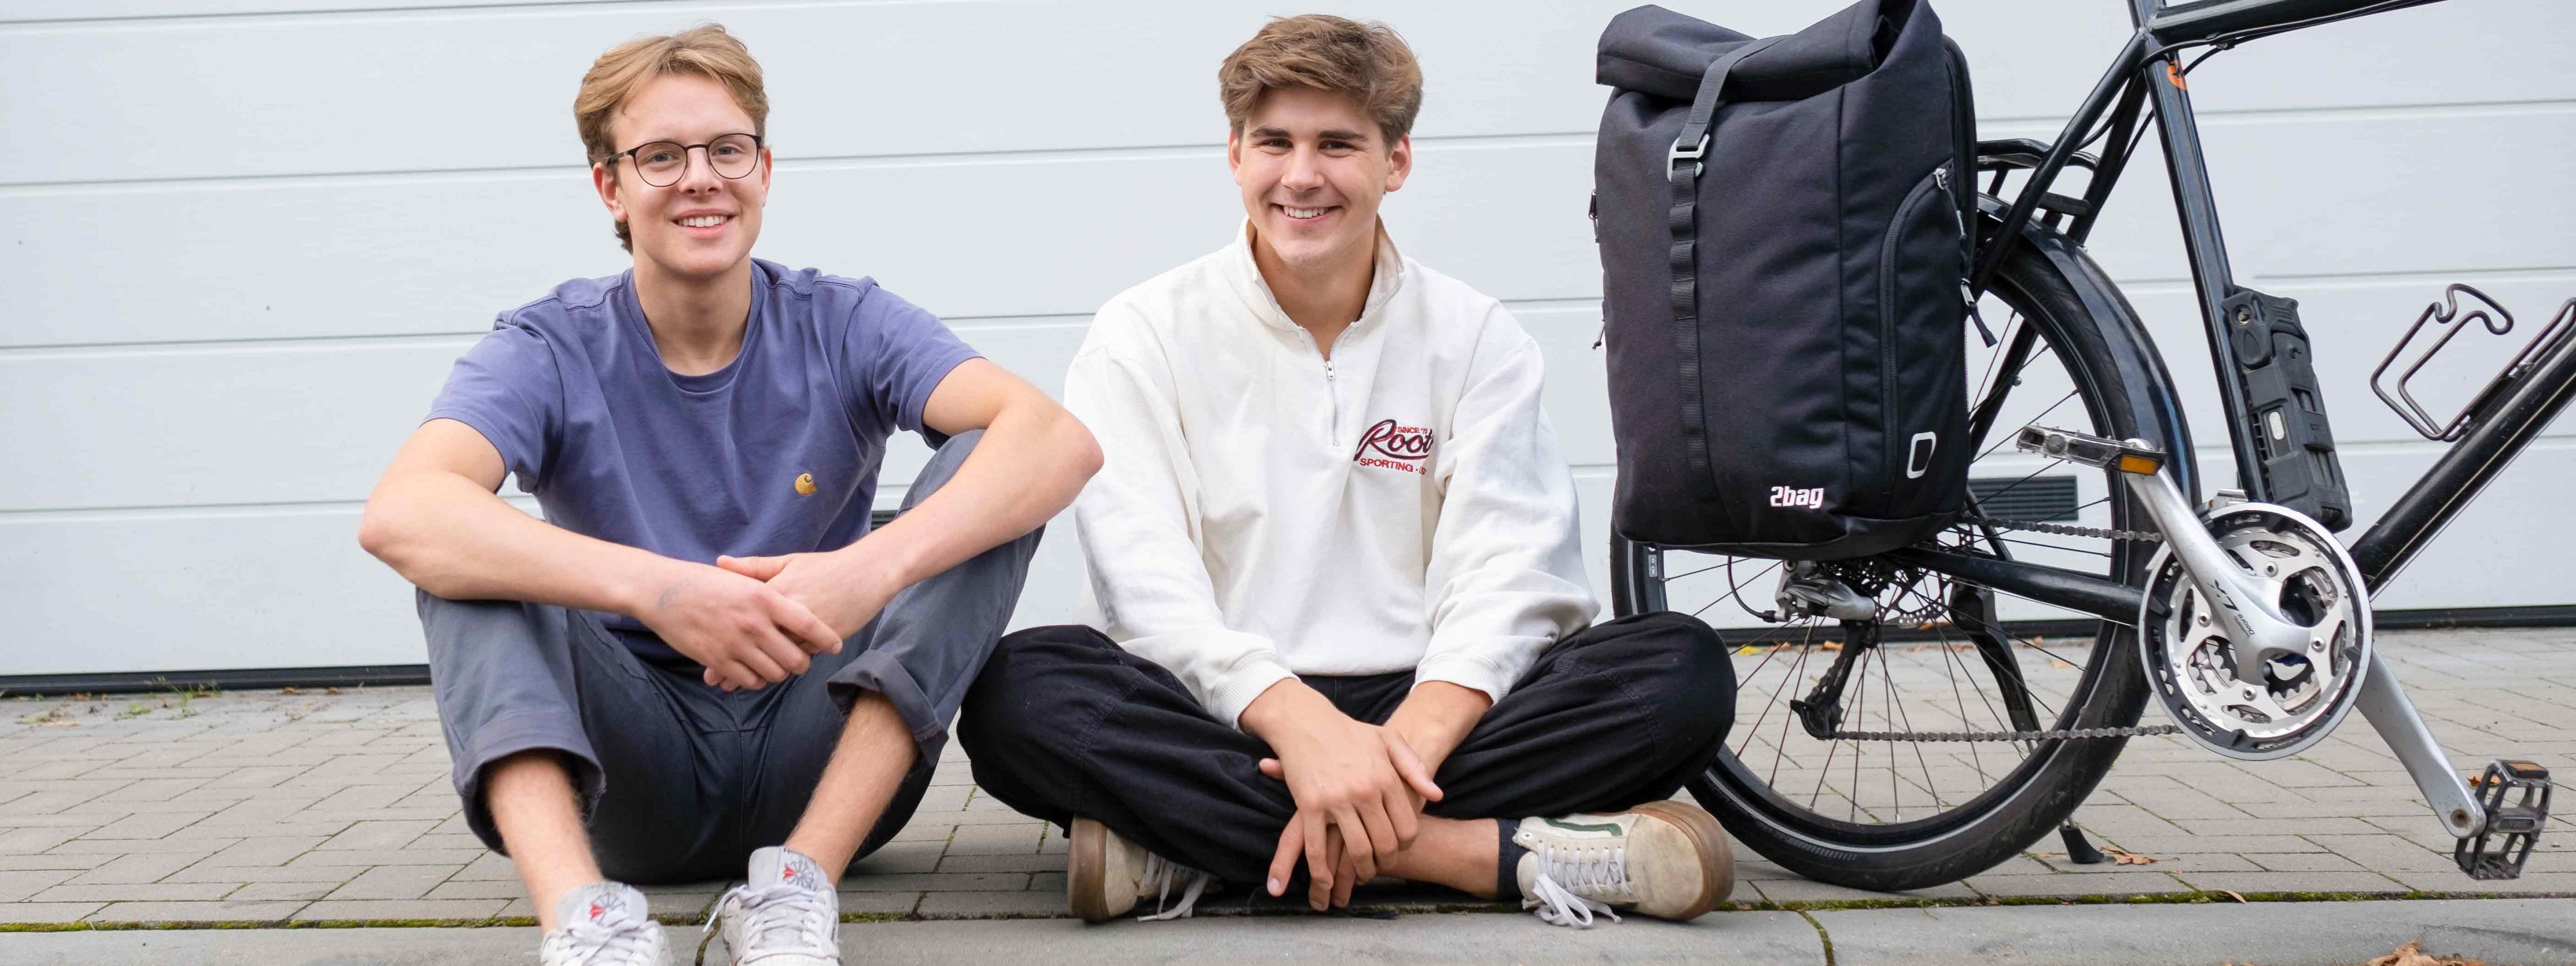 Leander Mellies und Karl Fischer vom Start-up 2bag sitzen auf dem Bordstein neben einem Fahrrad